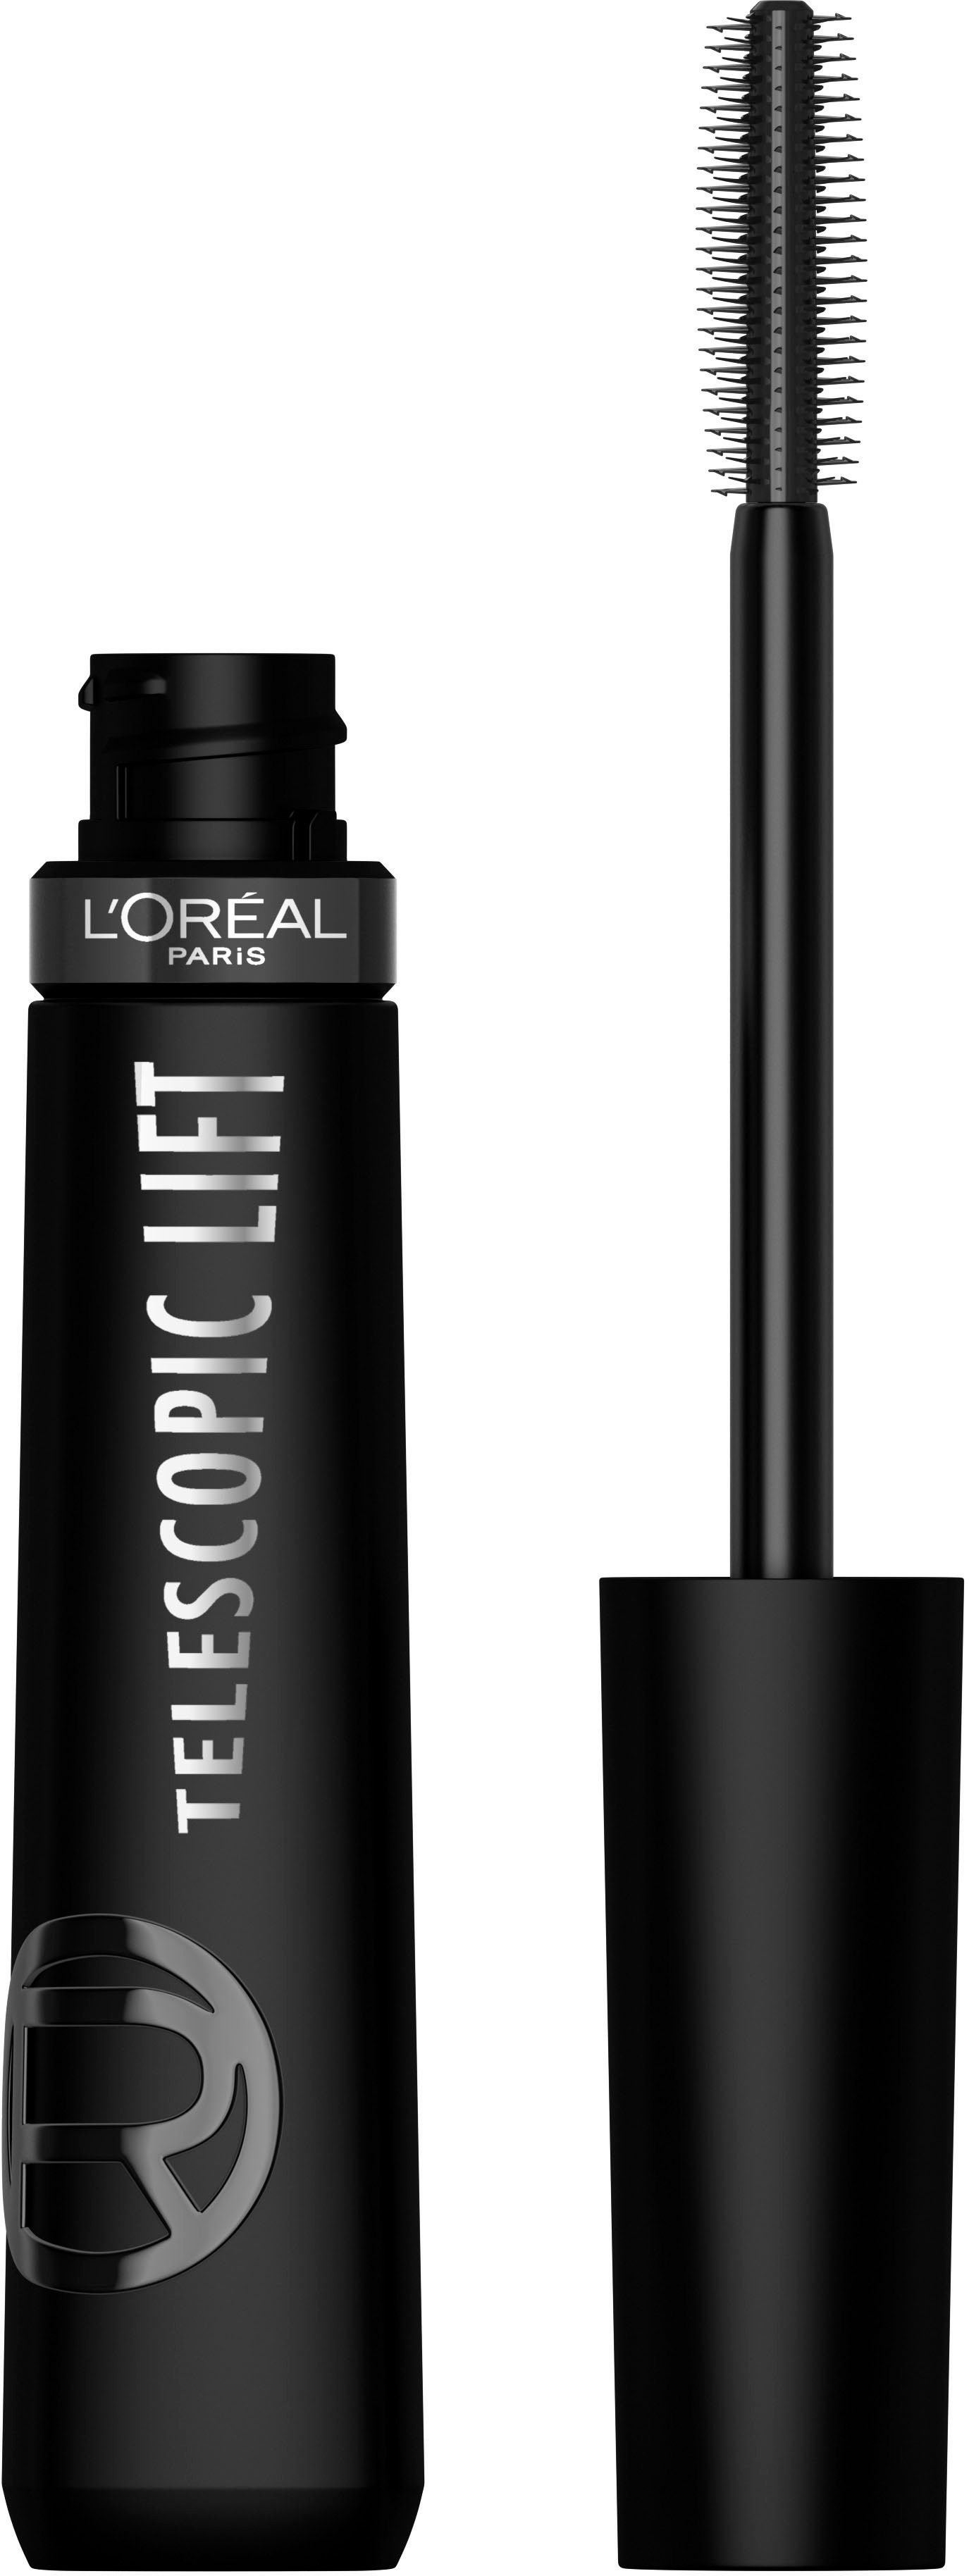 L'ORÉAL PARIS Mascara Black Wimperntusche L'Oréal Extra Telescopic Lifting-Effekt mit Mascara, Lift Paris